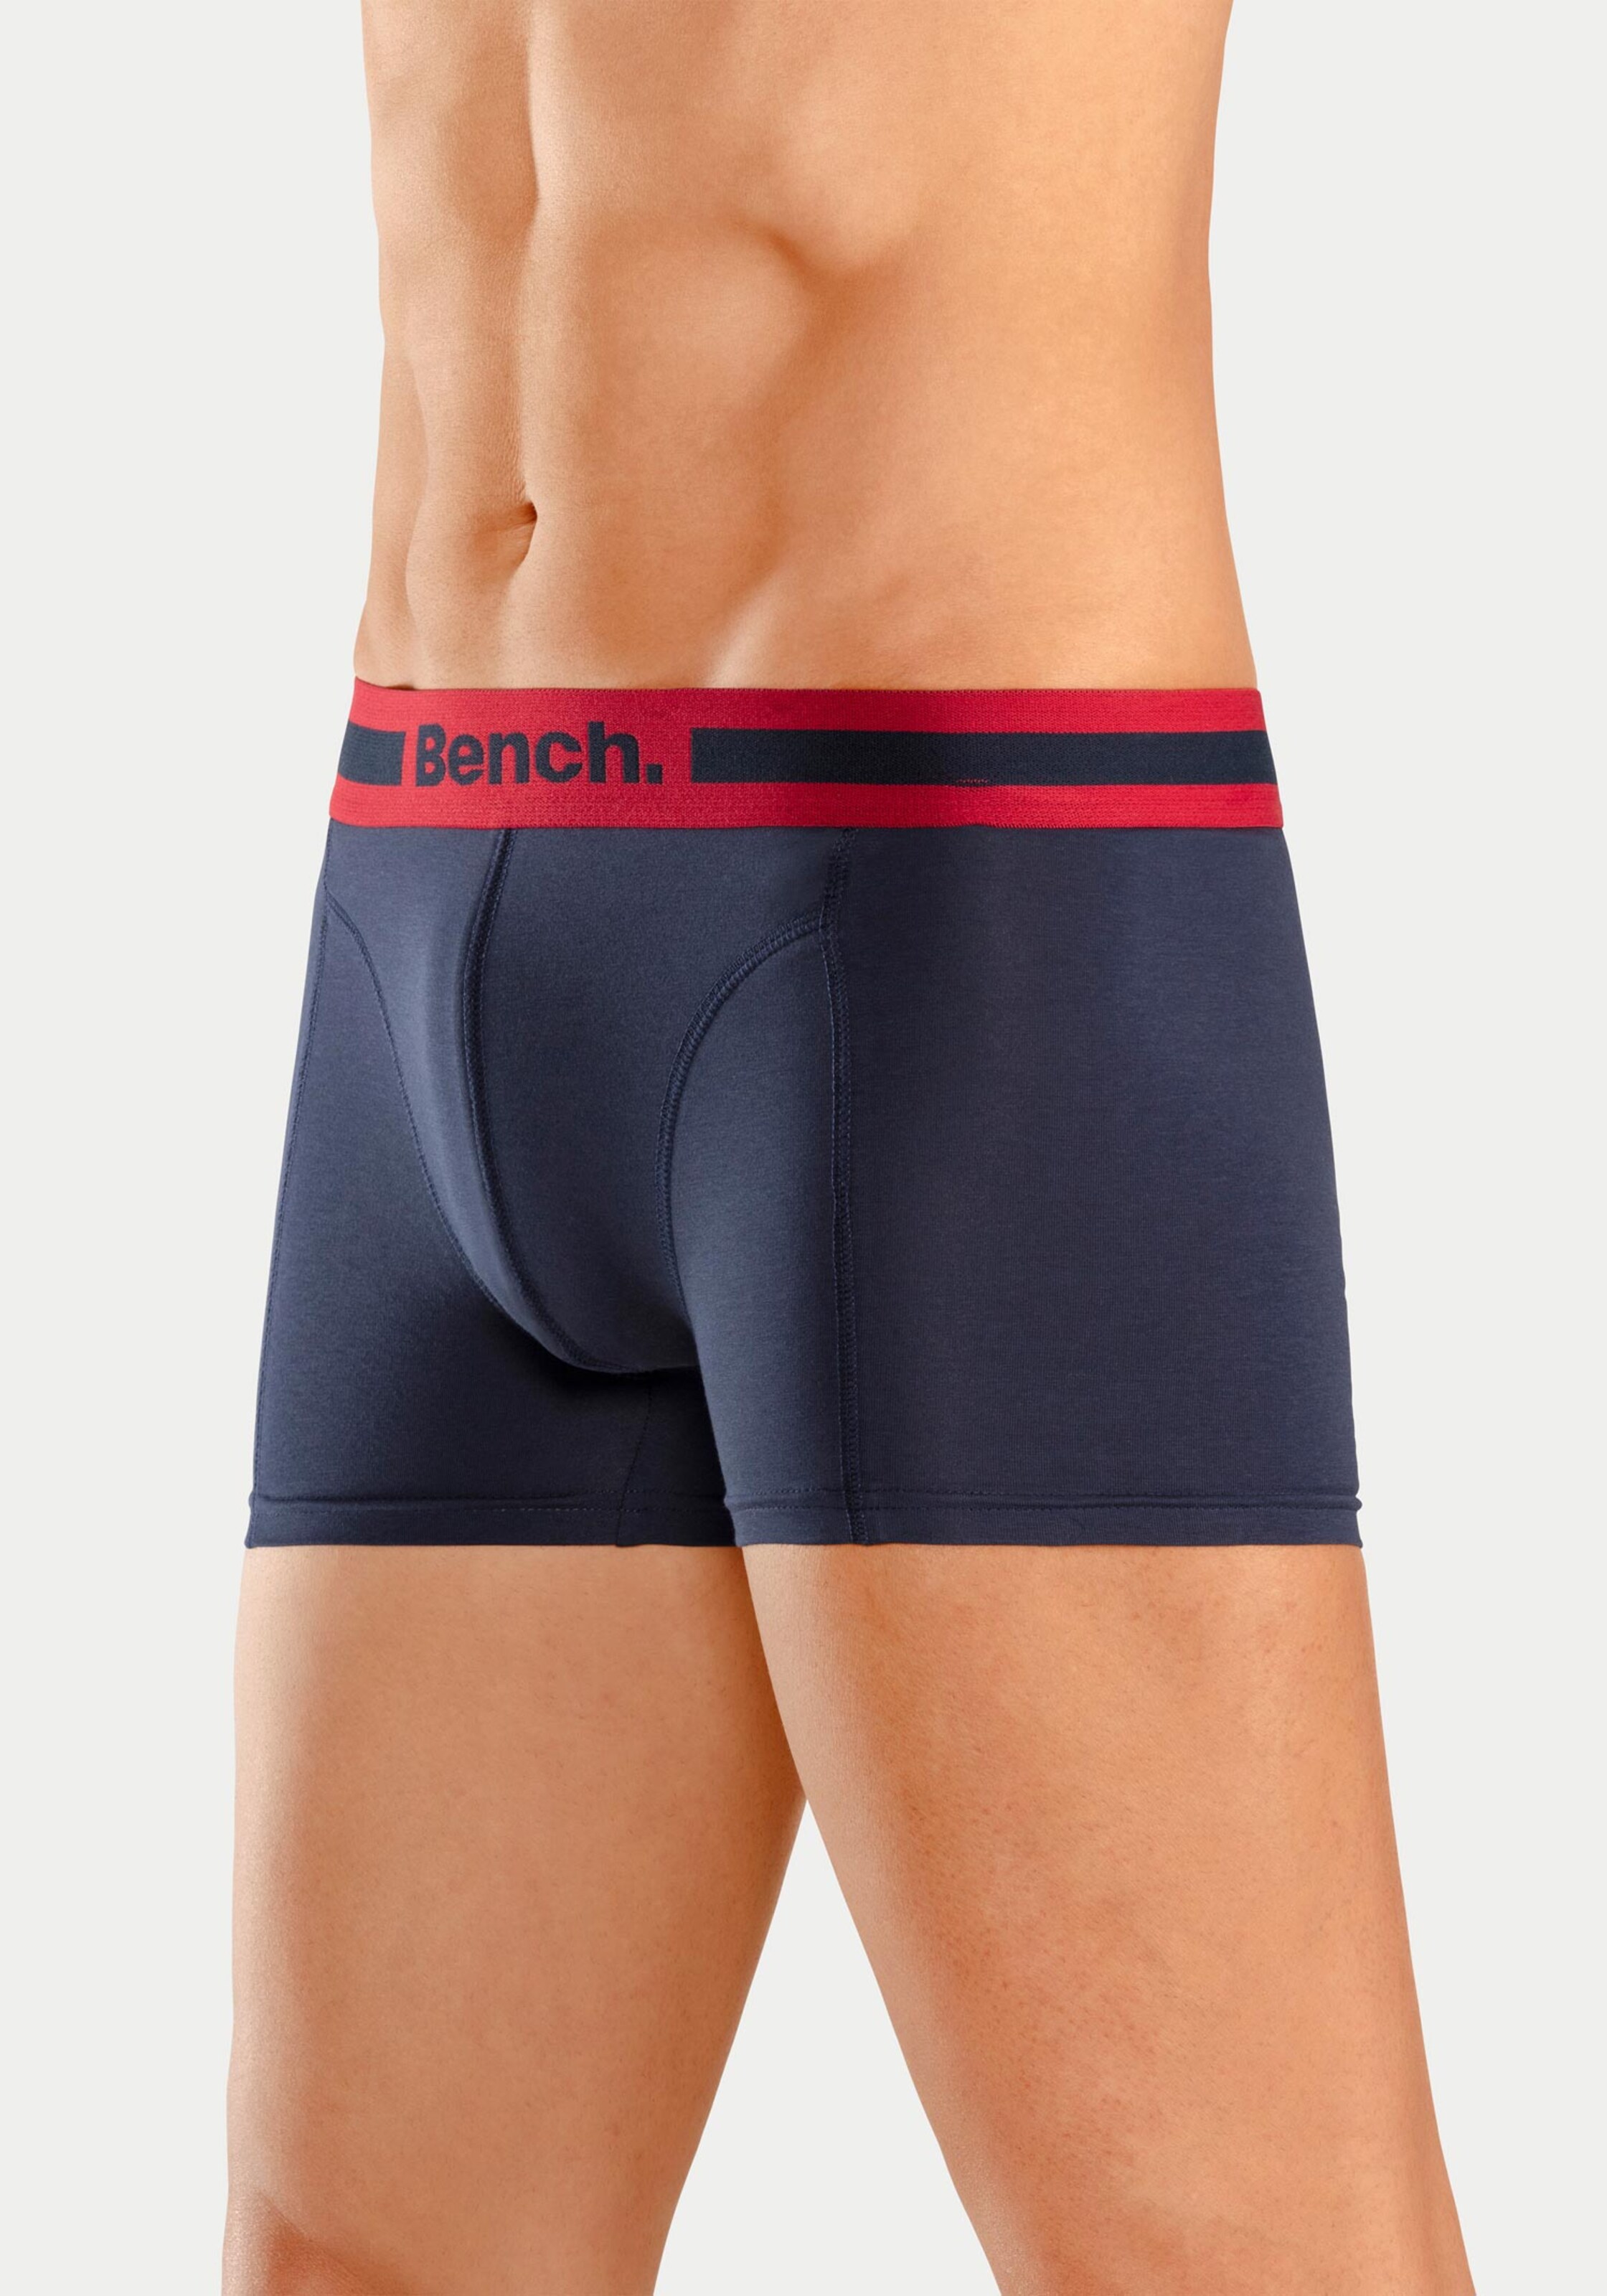 Wäsche Pants Bench. Boxer in 1x navy-blau + 1x navy-grau-meliert + 1x navy-rot + 1x navy-weiß 